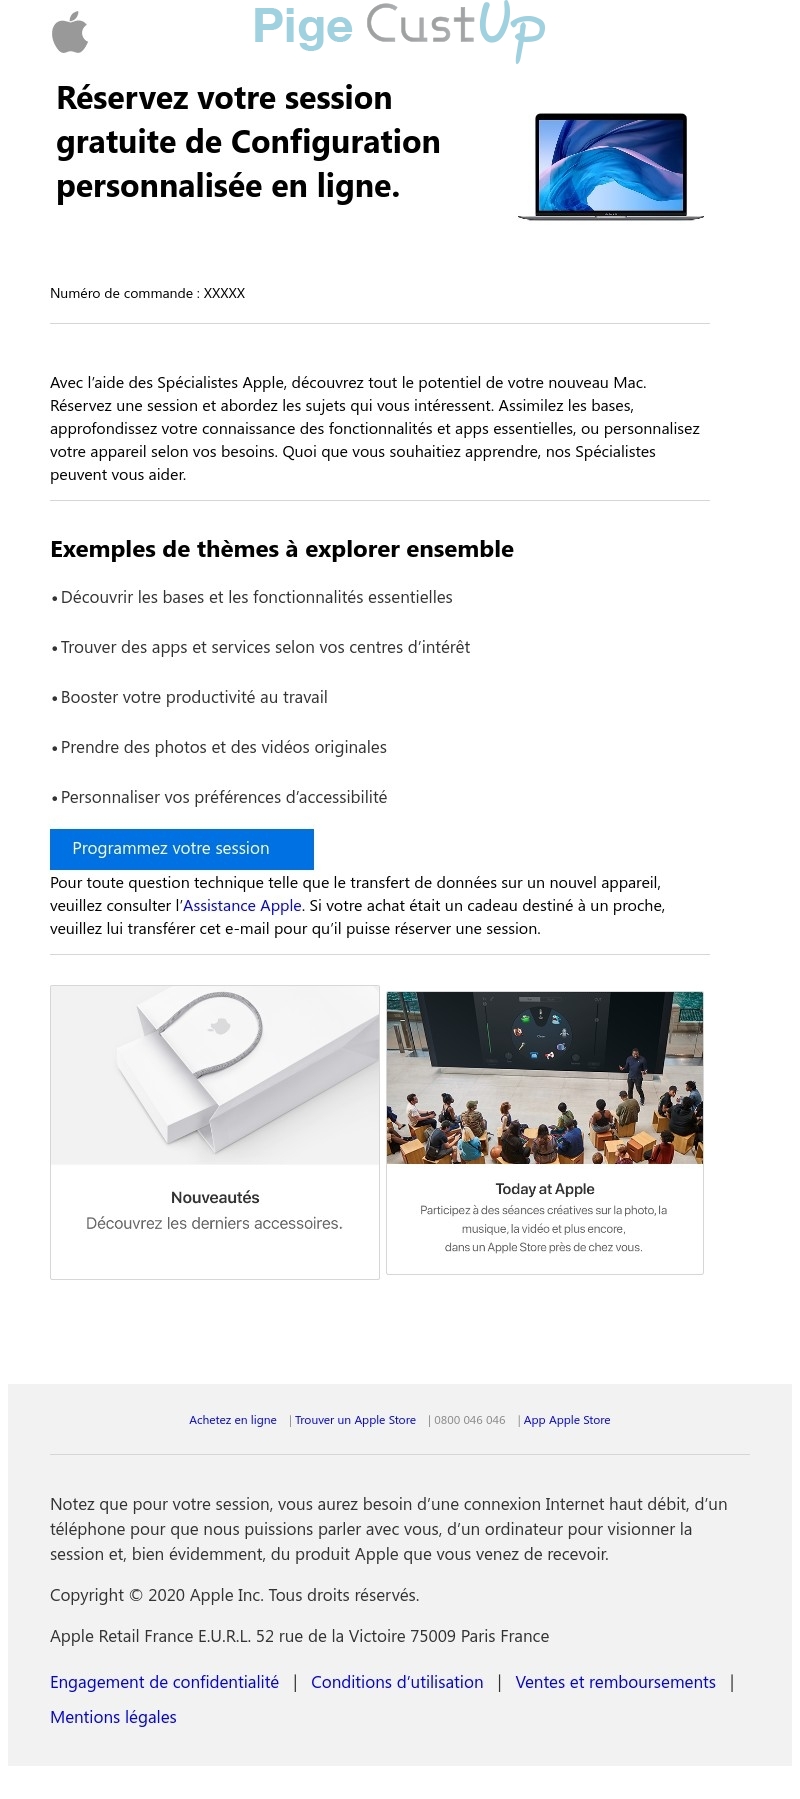 Exemple de Type de media  e-mailing - Apple.com - Marketing fidélisation - Accompagnement usage produit ou service